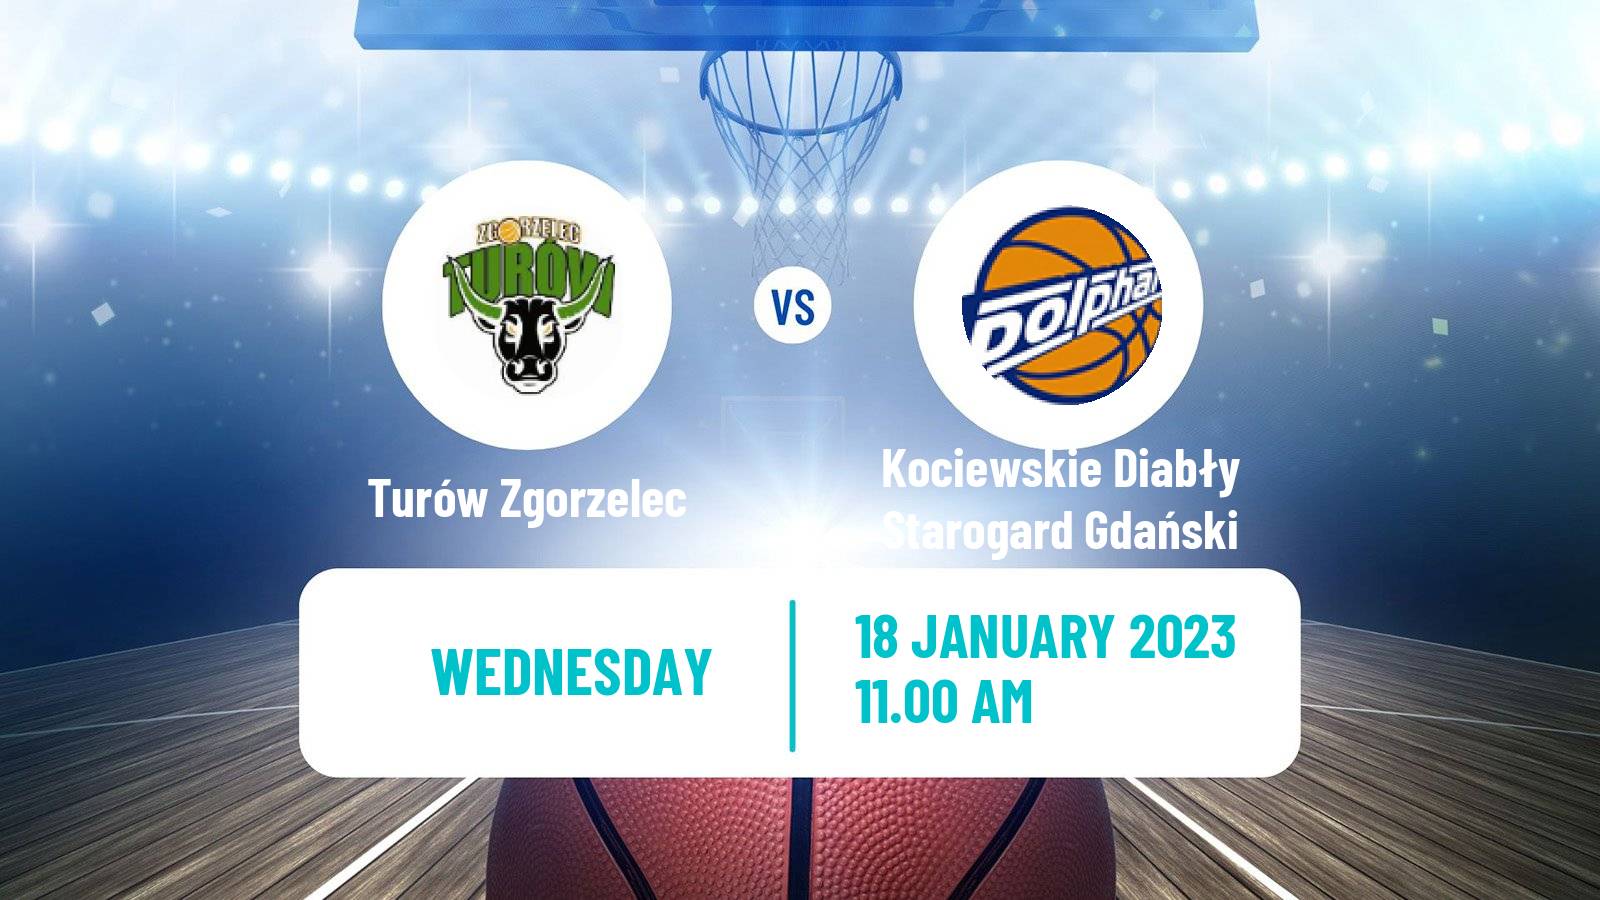 Basketball Polish 1 Liga Basketball Turów Zgorzelec - Kociewskie Diabły Starogard Gdański